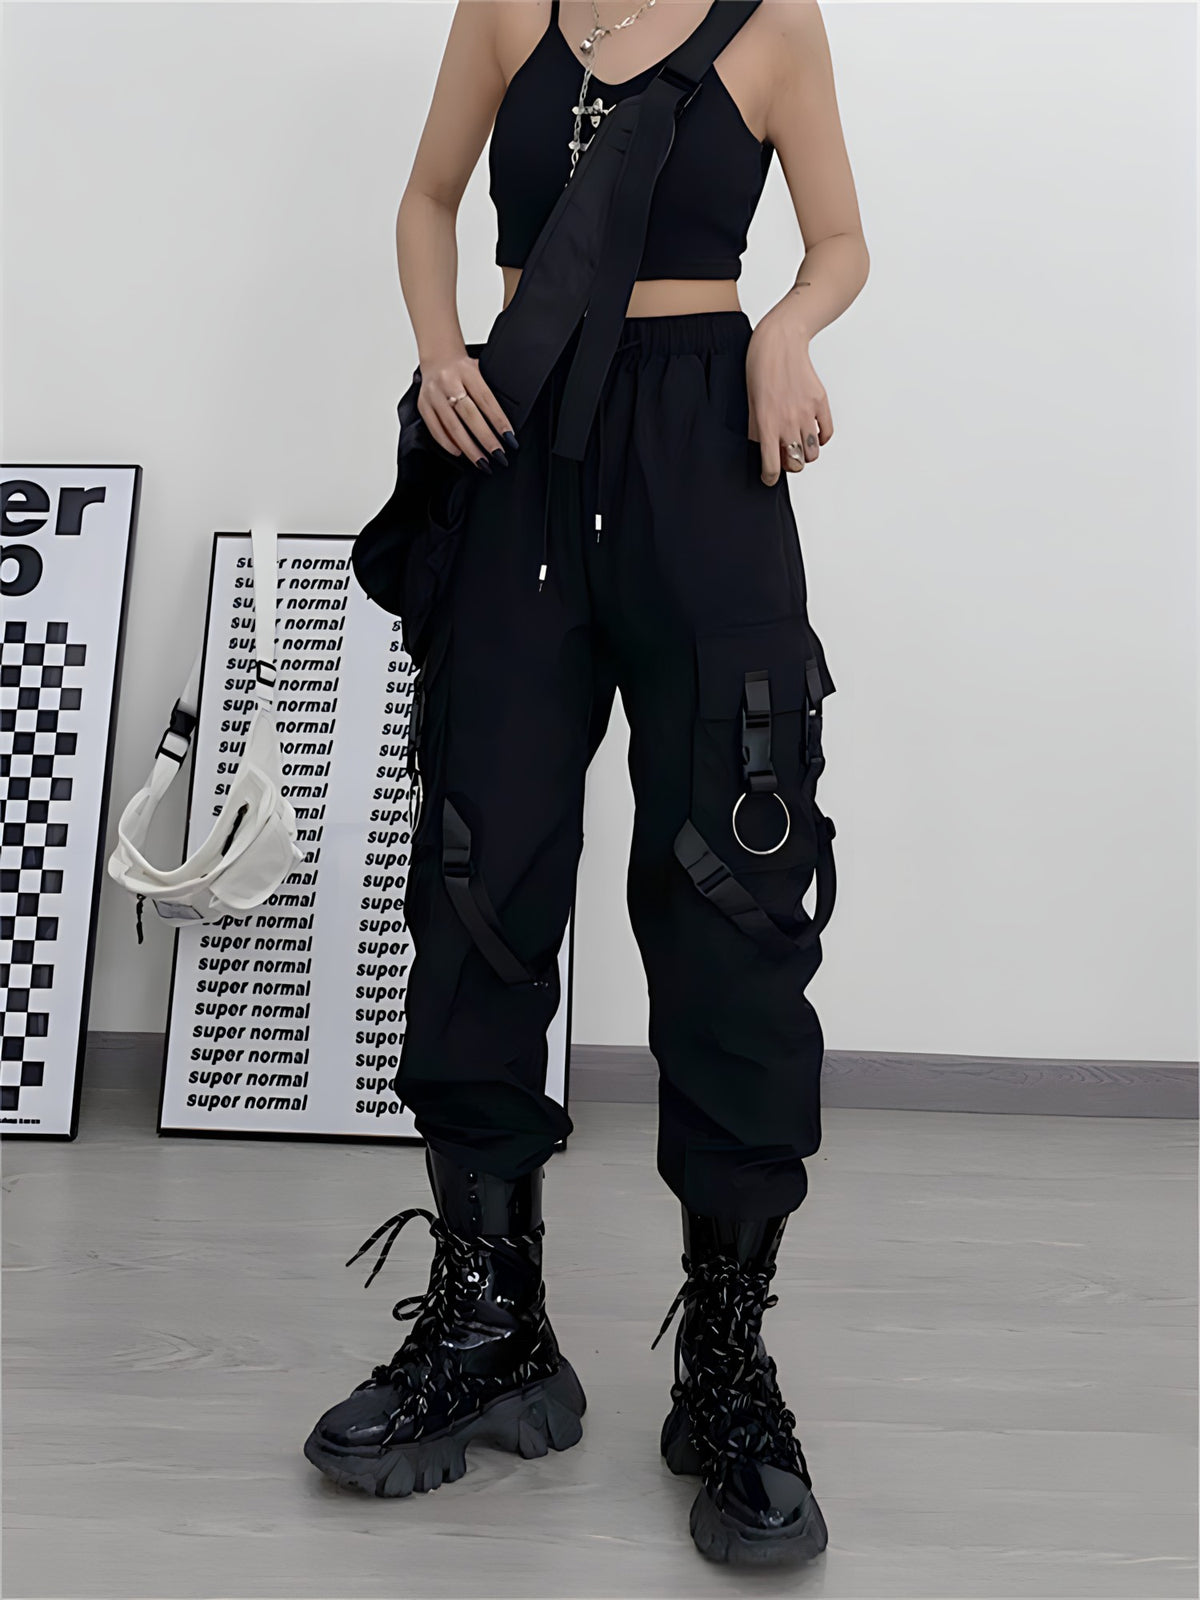 2022 Asymmetrical Tactical Techwear Cargo Vest Women Ribbons